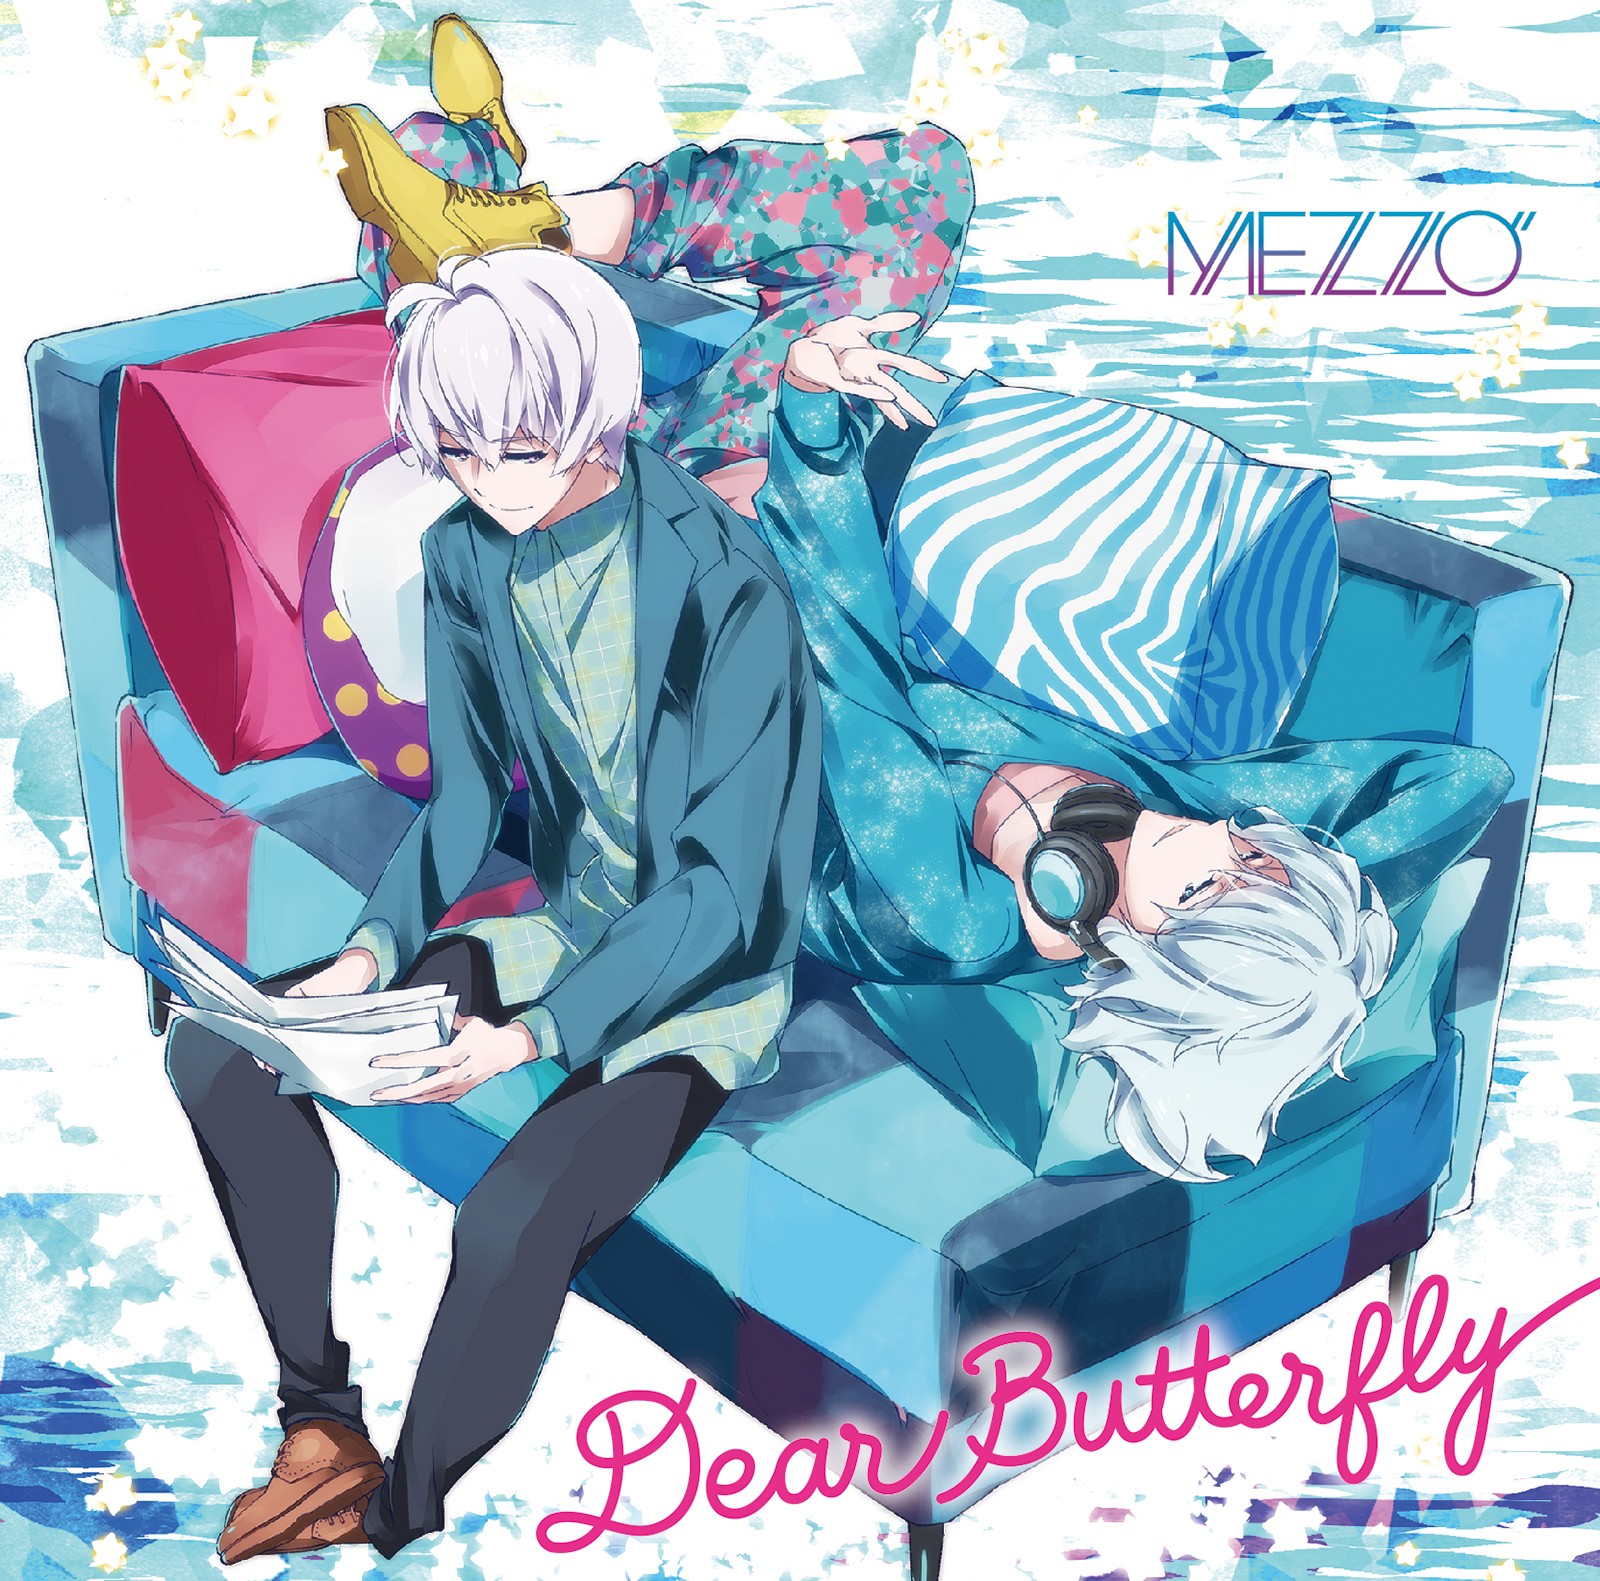 MEZZO” - Dear Butterfly [FLAC 24bit/96kHz]